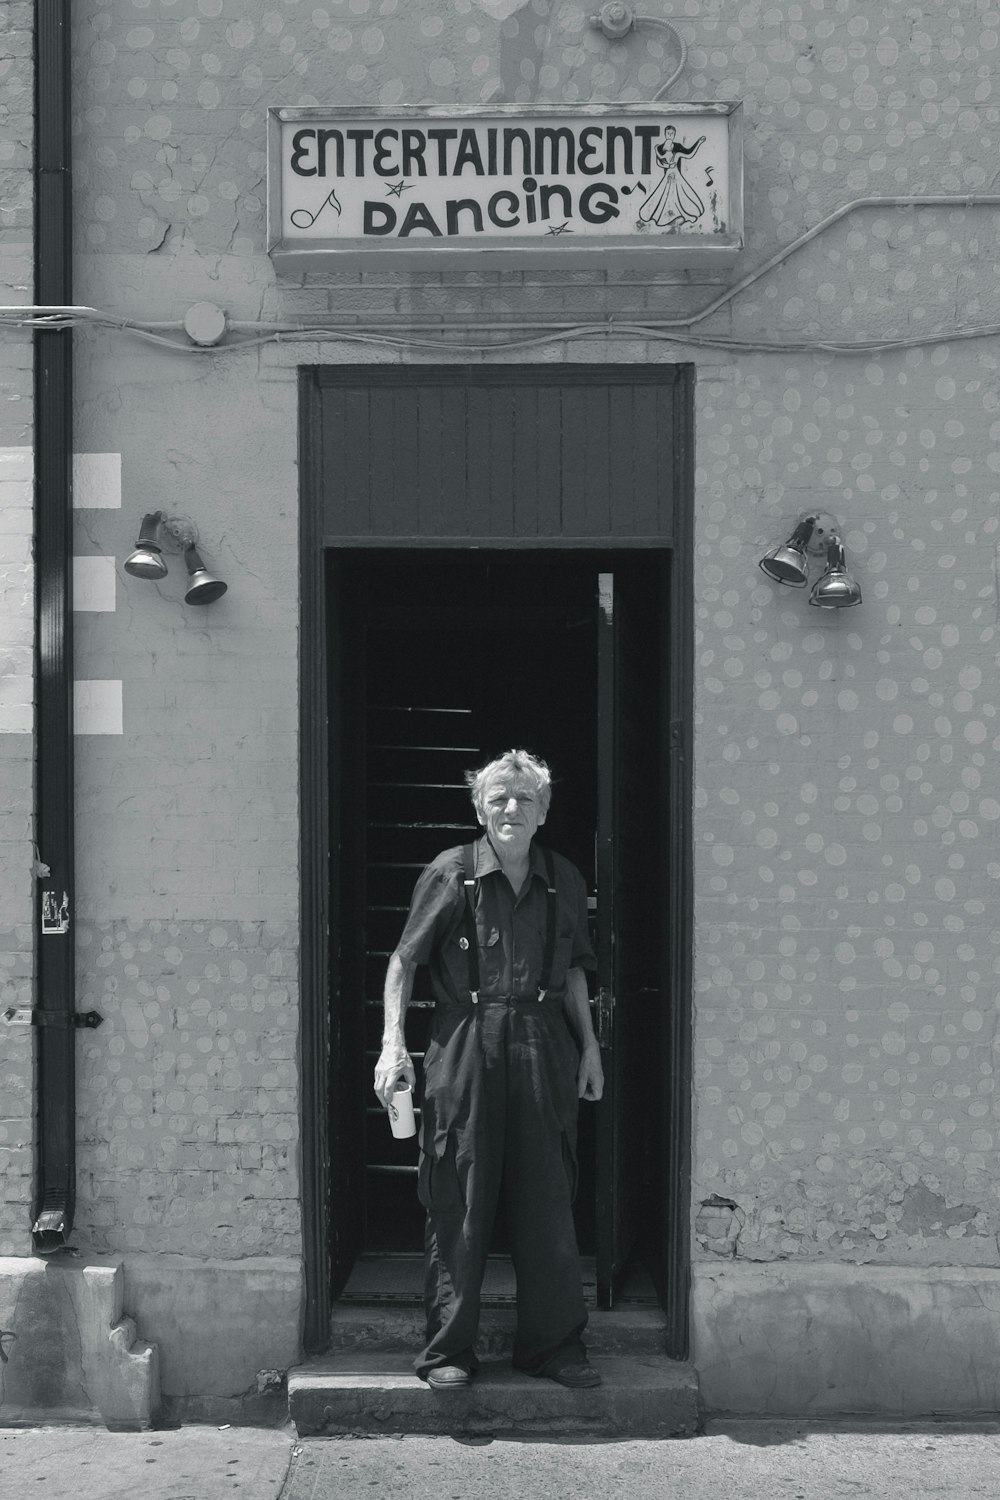 photo en niveaux de gris d’un homme portant des hauts à col et un pantalon habillé debout entre un mur de béton près d’un bâtiment de signalisation Entertainment Dancing